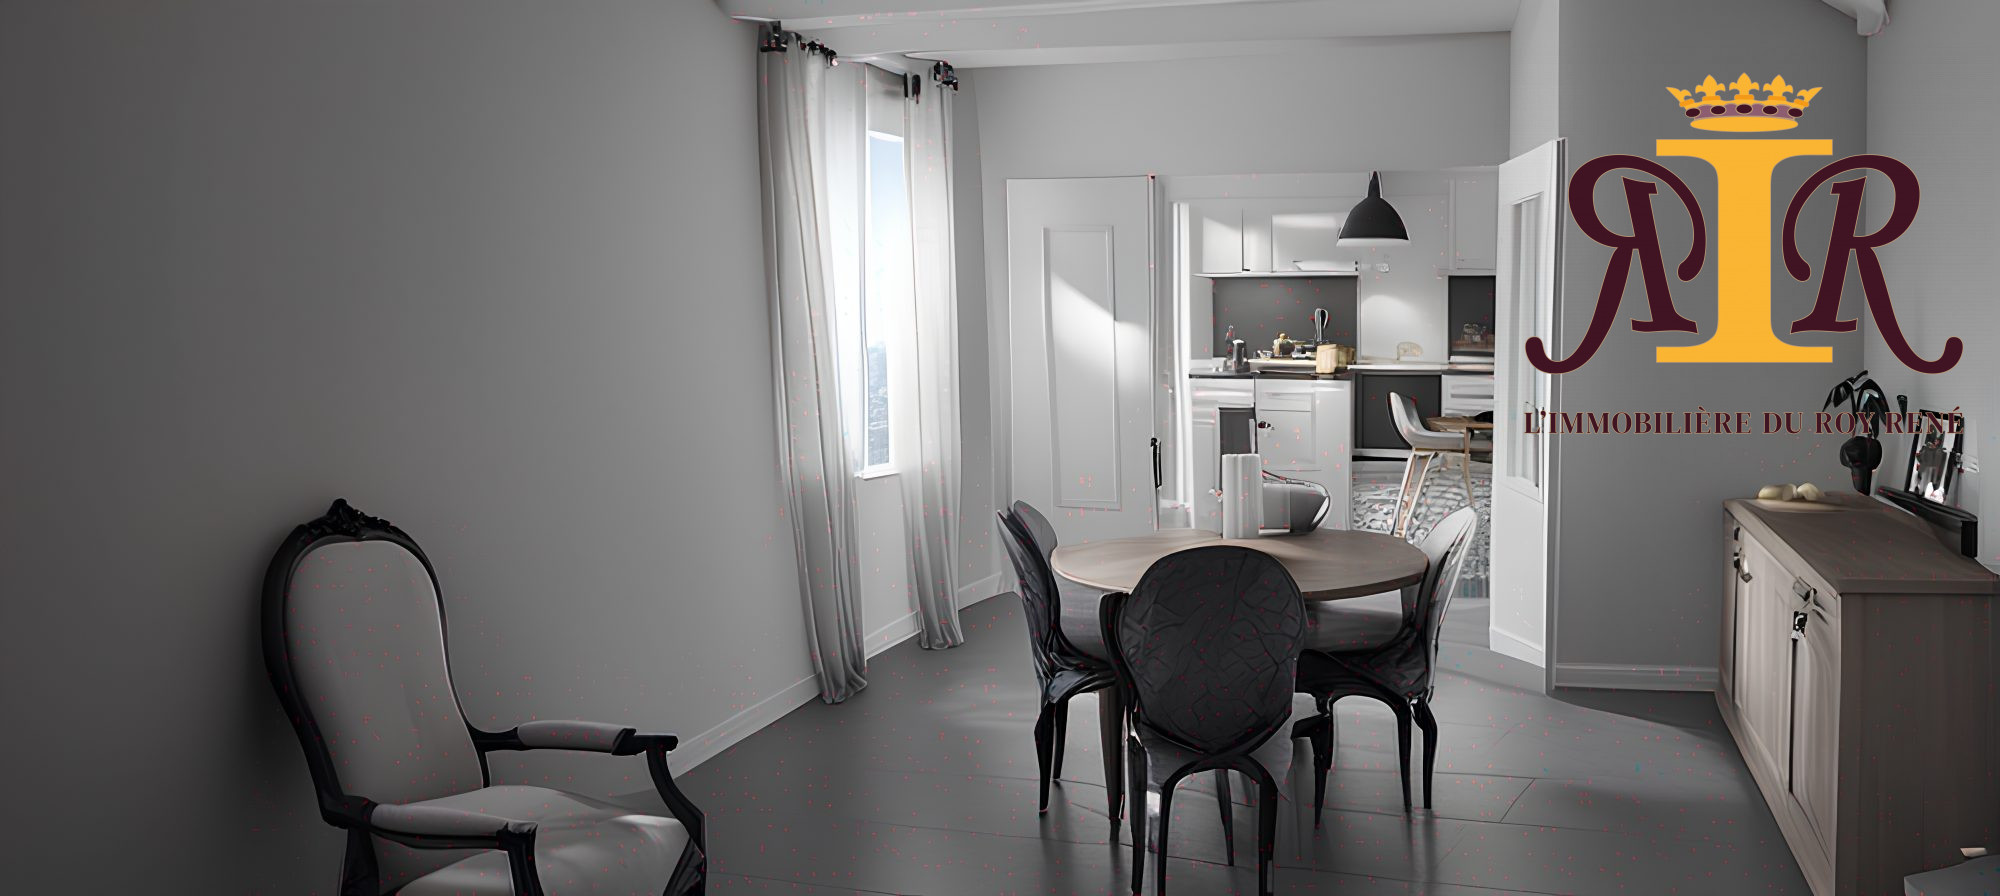 Vente Appartement 78m² 3 Pièces à Manosque (04100) - Immobiliere Du Roy Rene